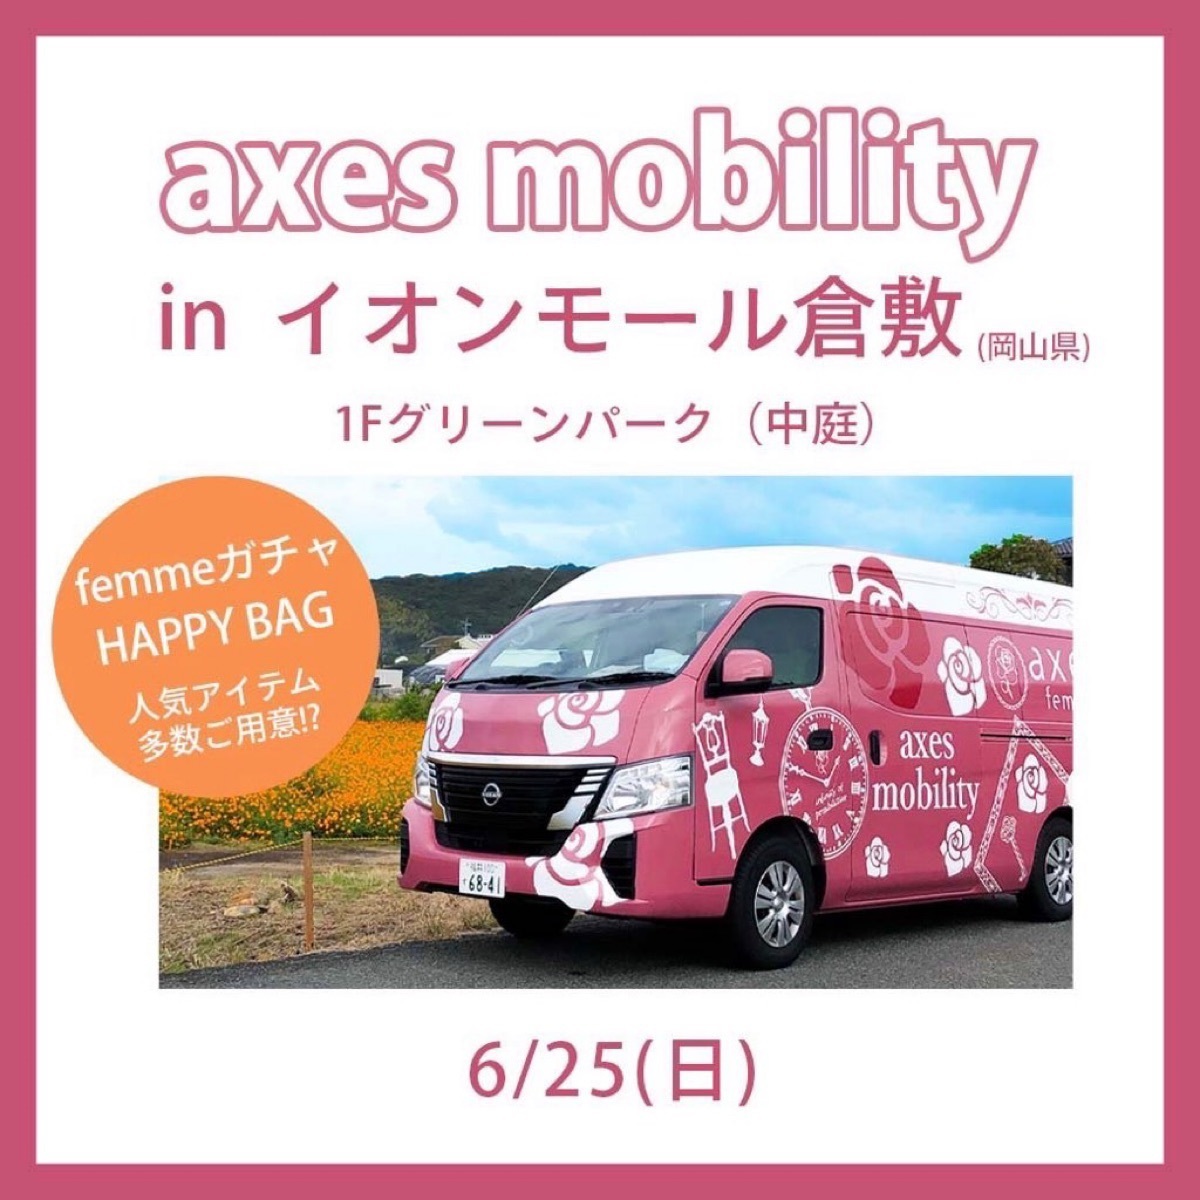 【イオン倉敷】25日(日)axesモビリティイベント開催♡